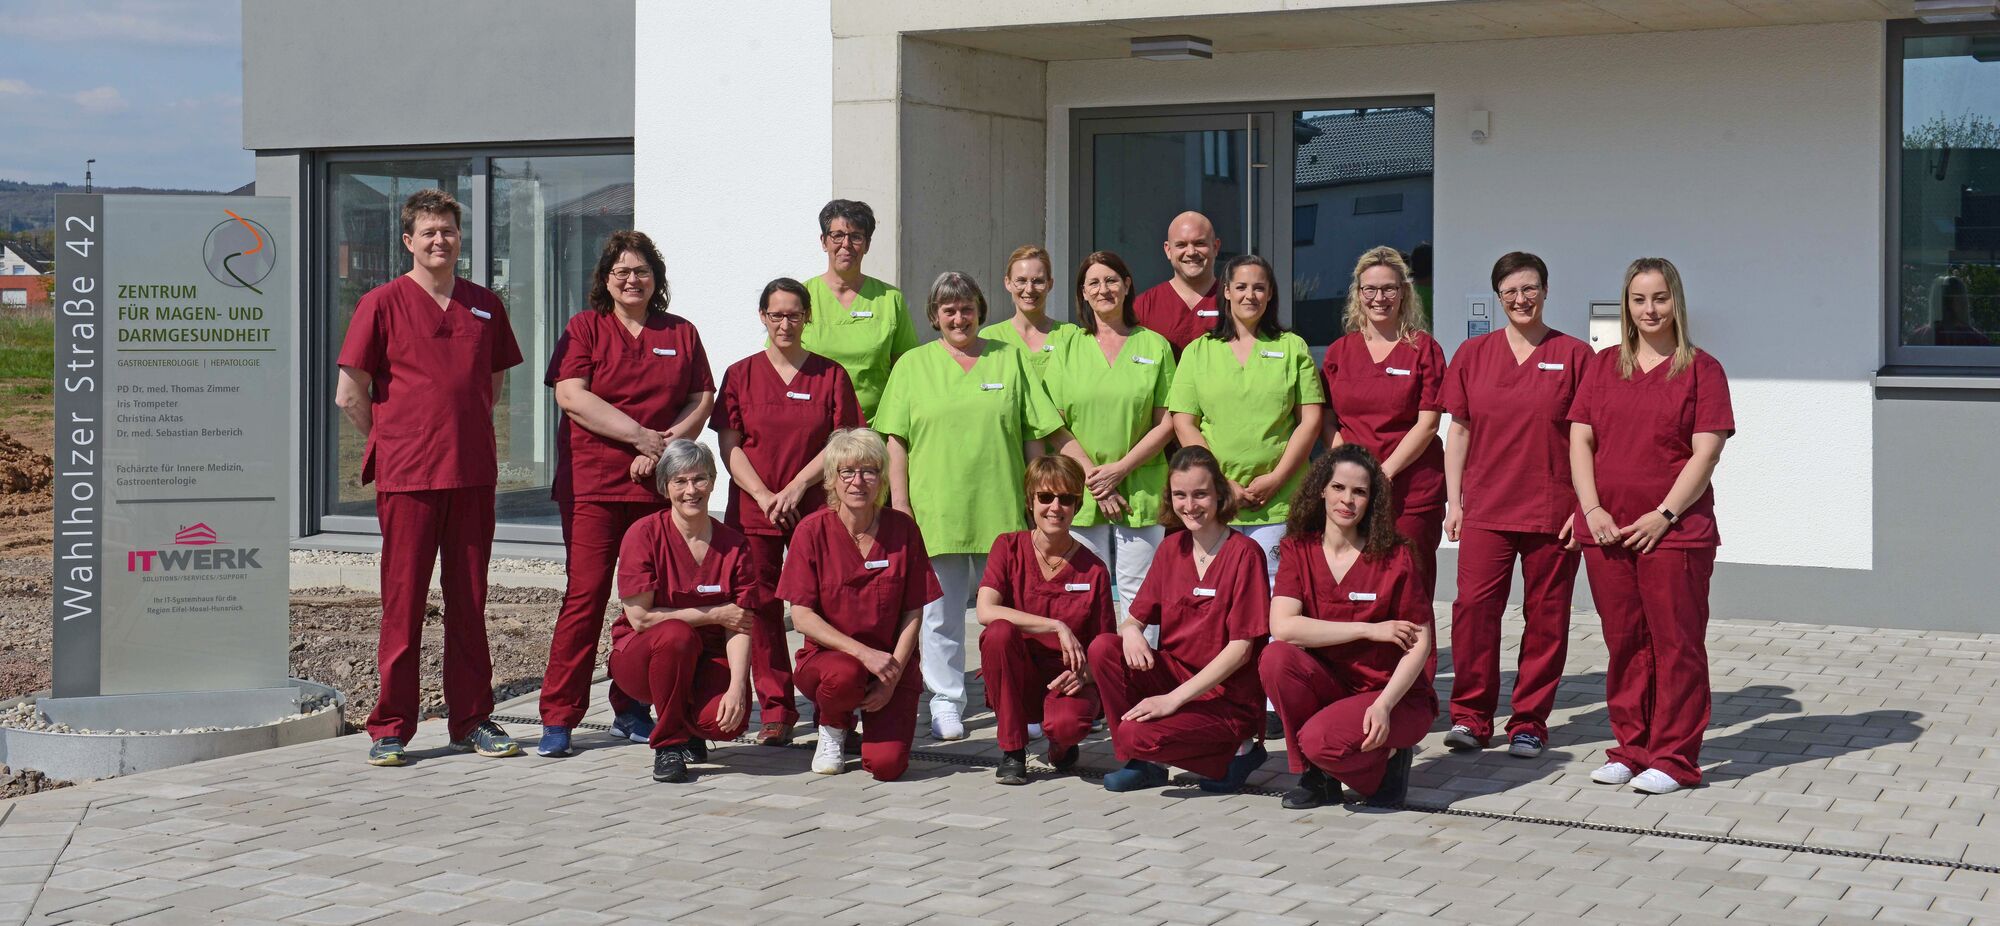 Ein BIld des Teams im Zentrum für Magen- und Darmgesundheit in Wittlich-Wengerohr.